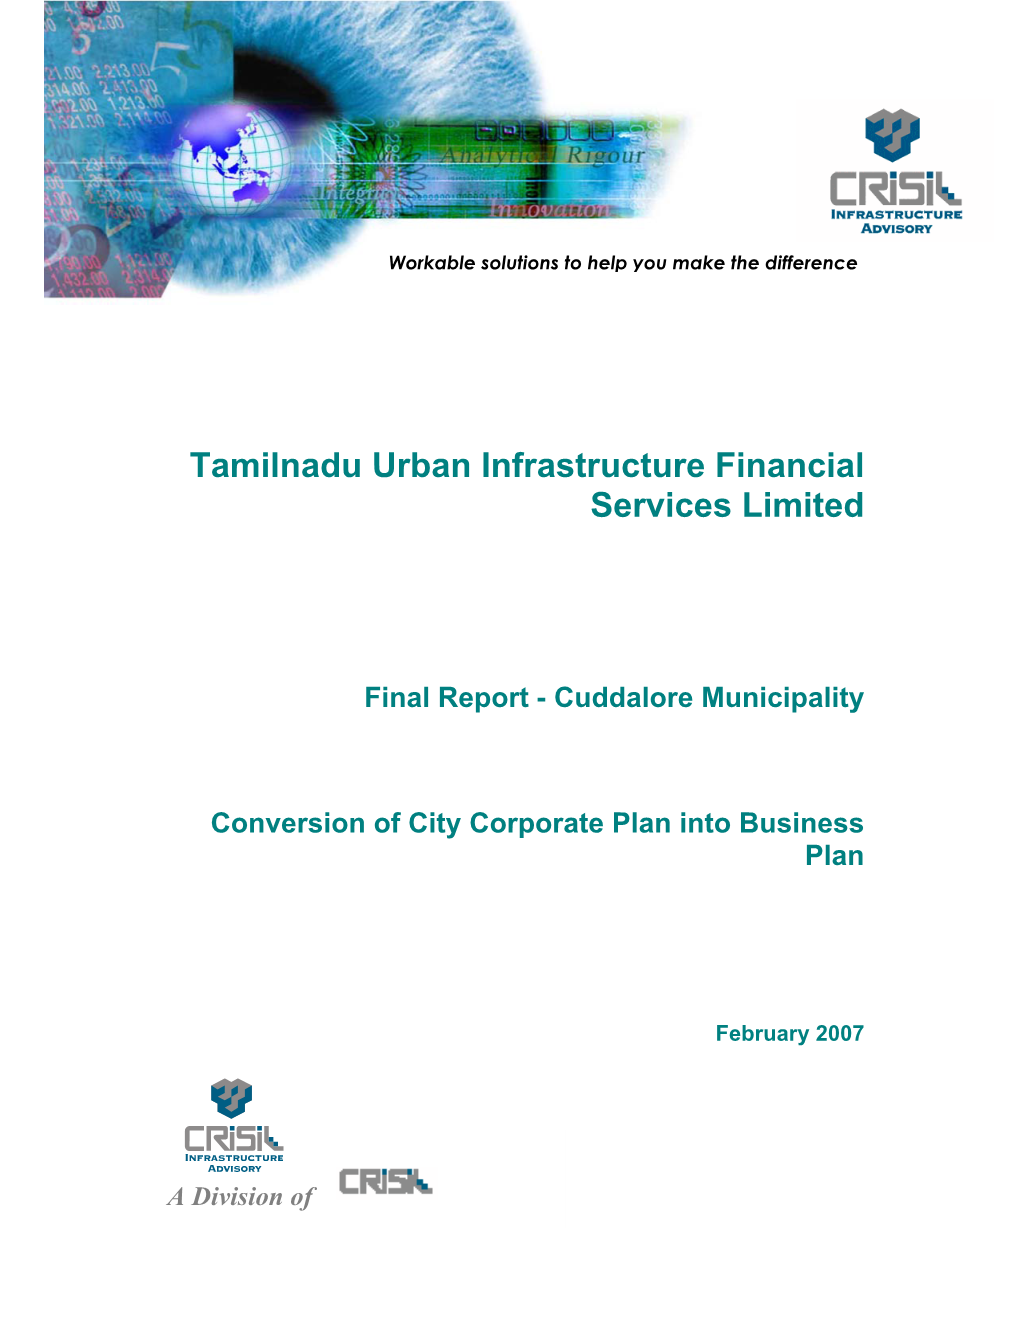 Tamilnadu Urban Infrastructure Financial Services Limited